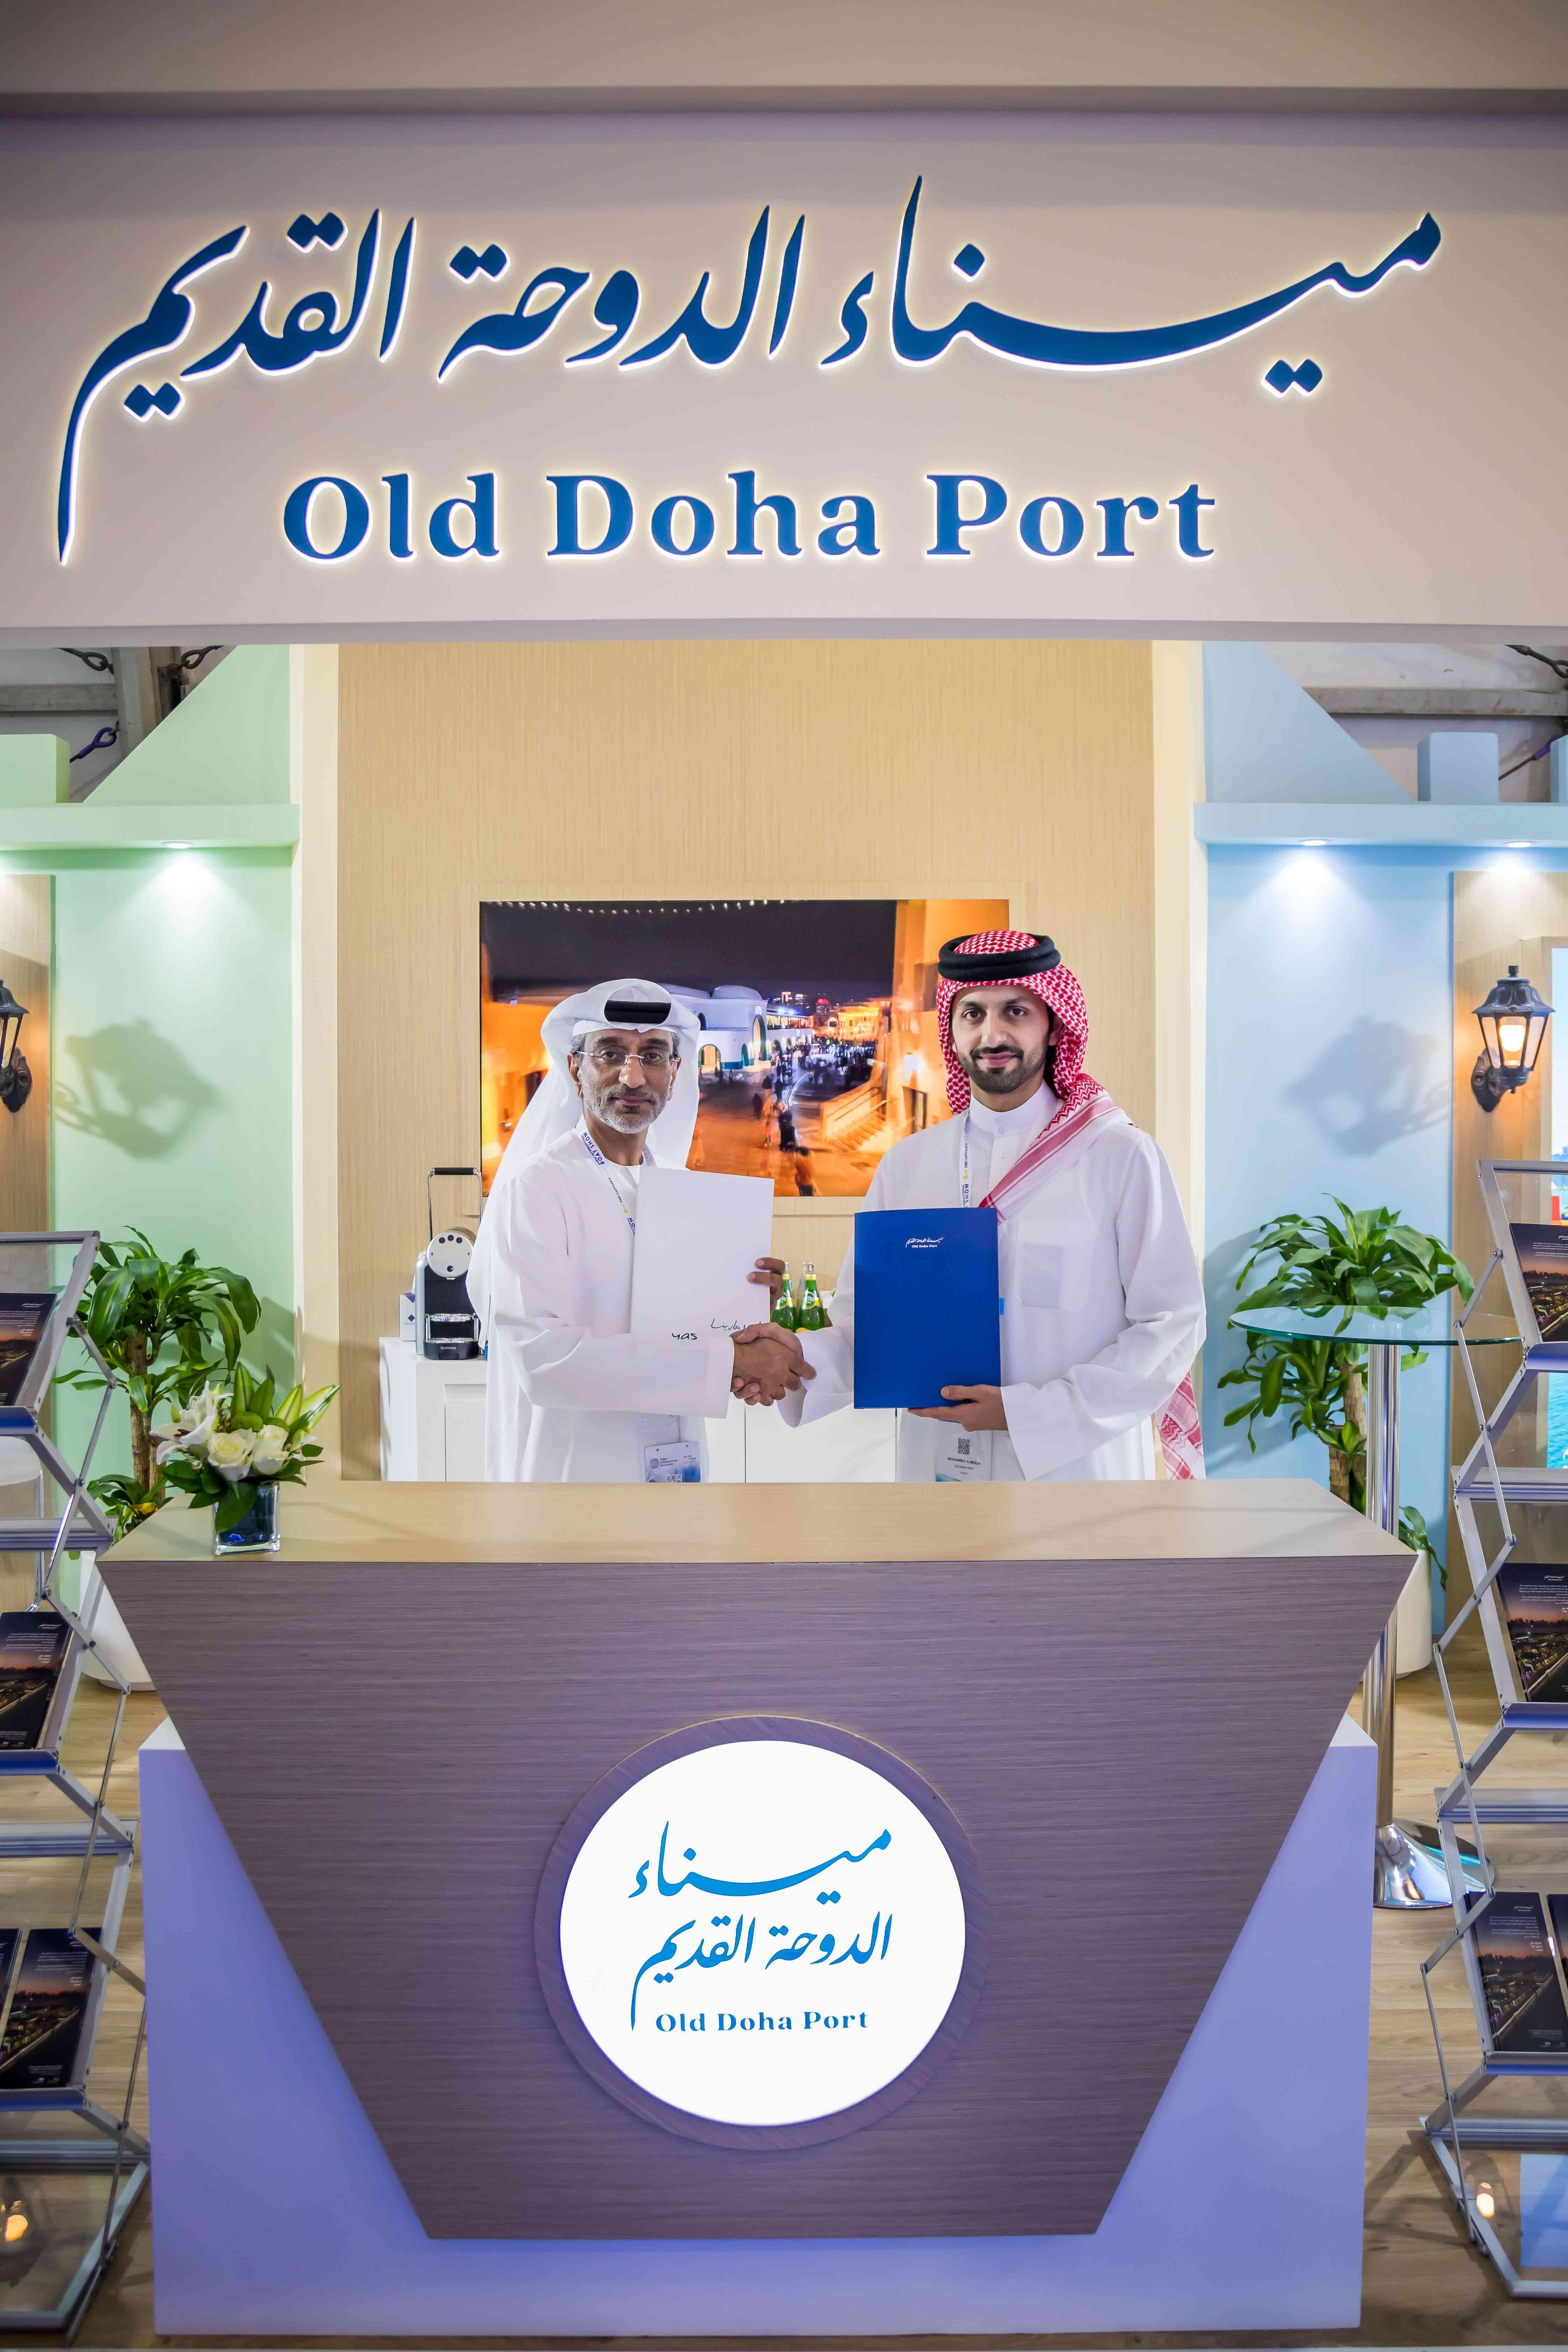 ميناء الدوحة القديم يشارك في معرض دبي الدولي للقوارب للسنة الثانية على التوالي، ويبرم اتفاقية تعاون و شراكة مع ياس مارينا - أبوظبي لتعزيز السياحة البح